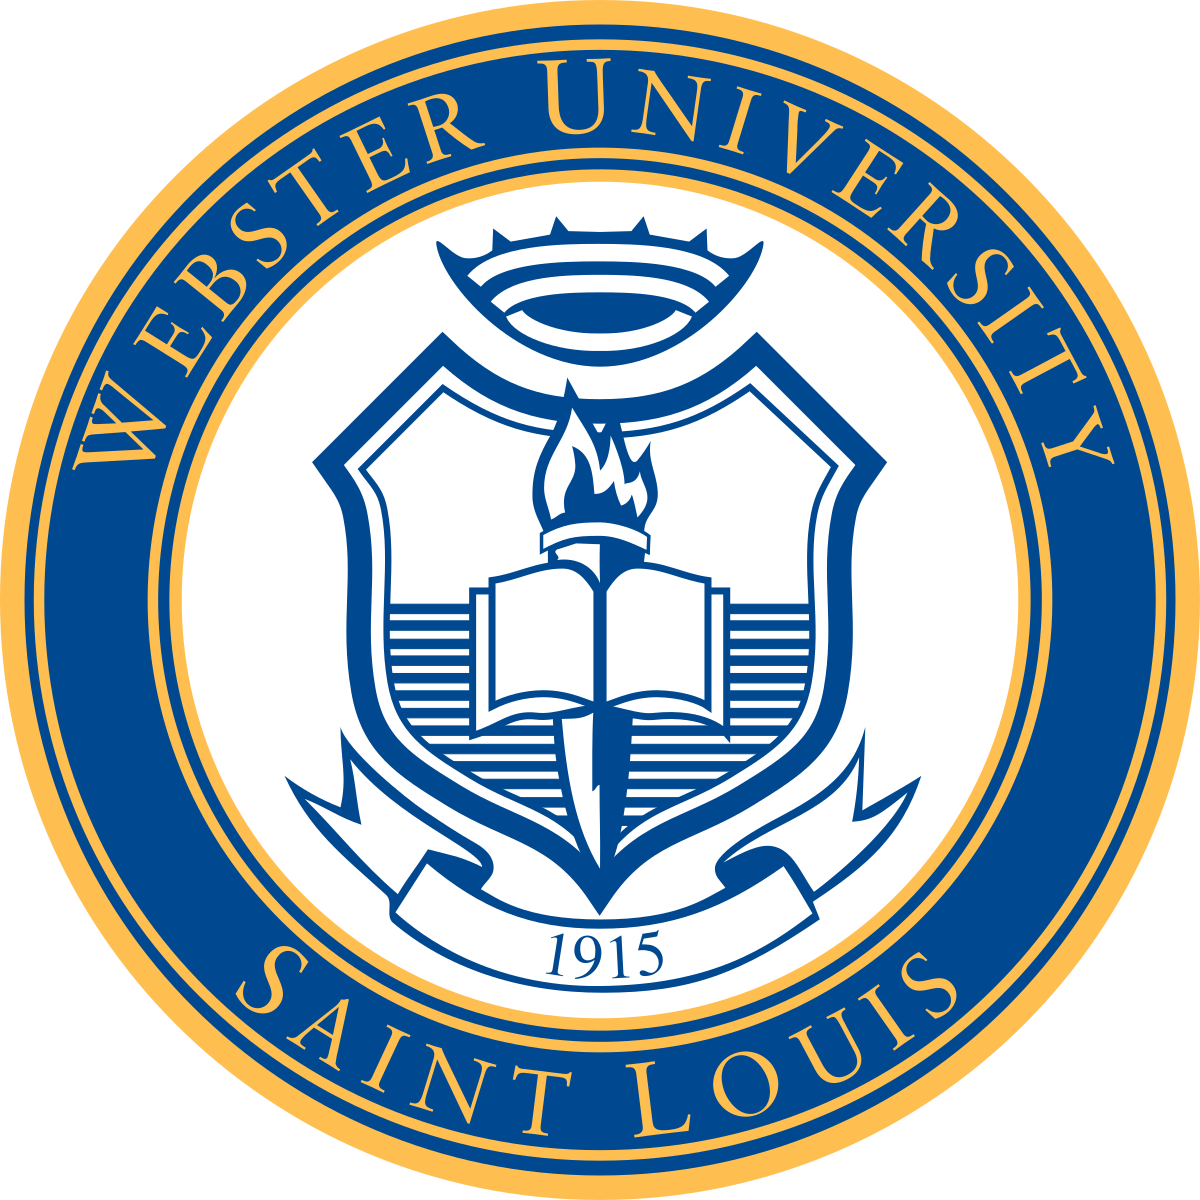 Webster University in St. Louis